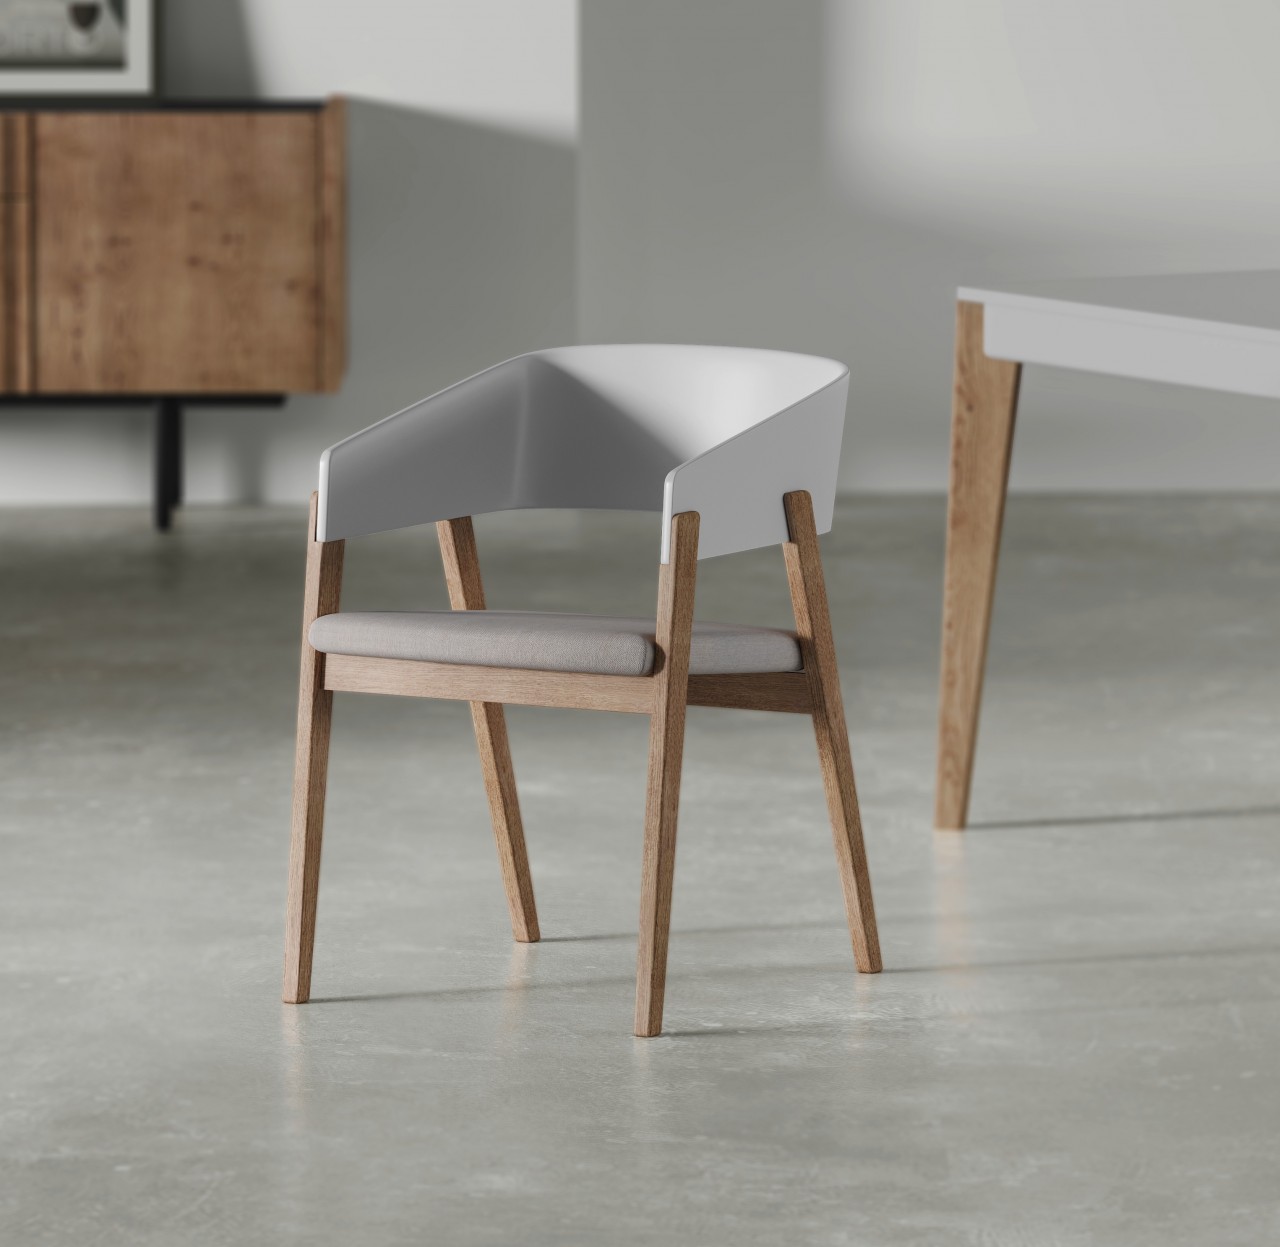 A cadeira da um toque moderno na sua sala de jantar. As cadeiras Slat são o elemento ideal para dar um ar sofisticado e elegante à sua decoração.